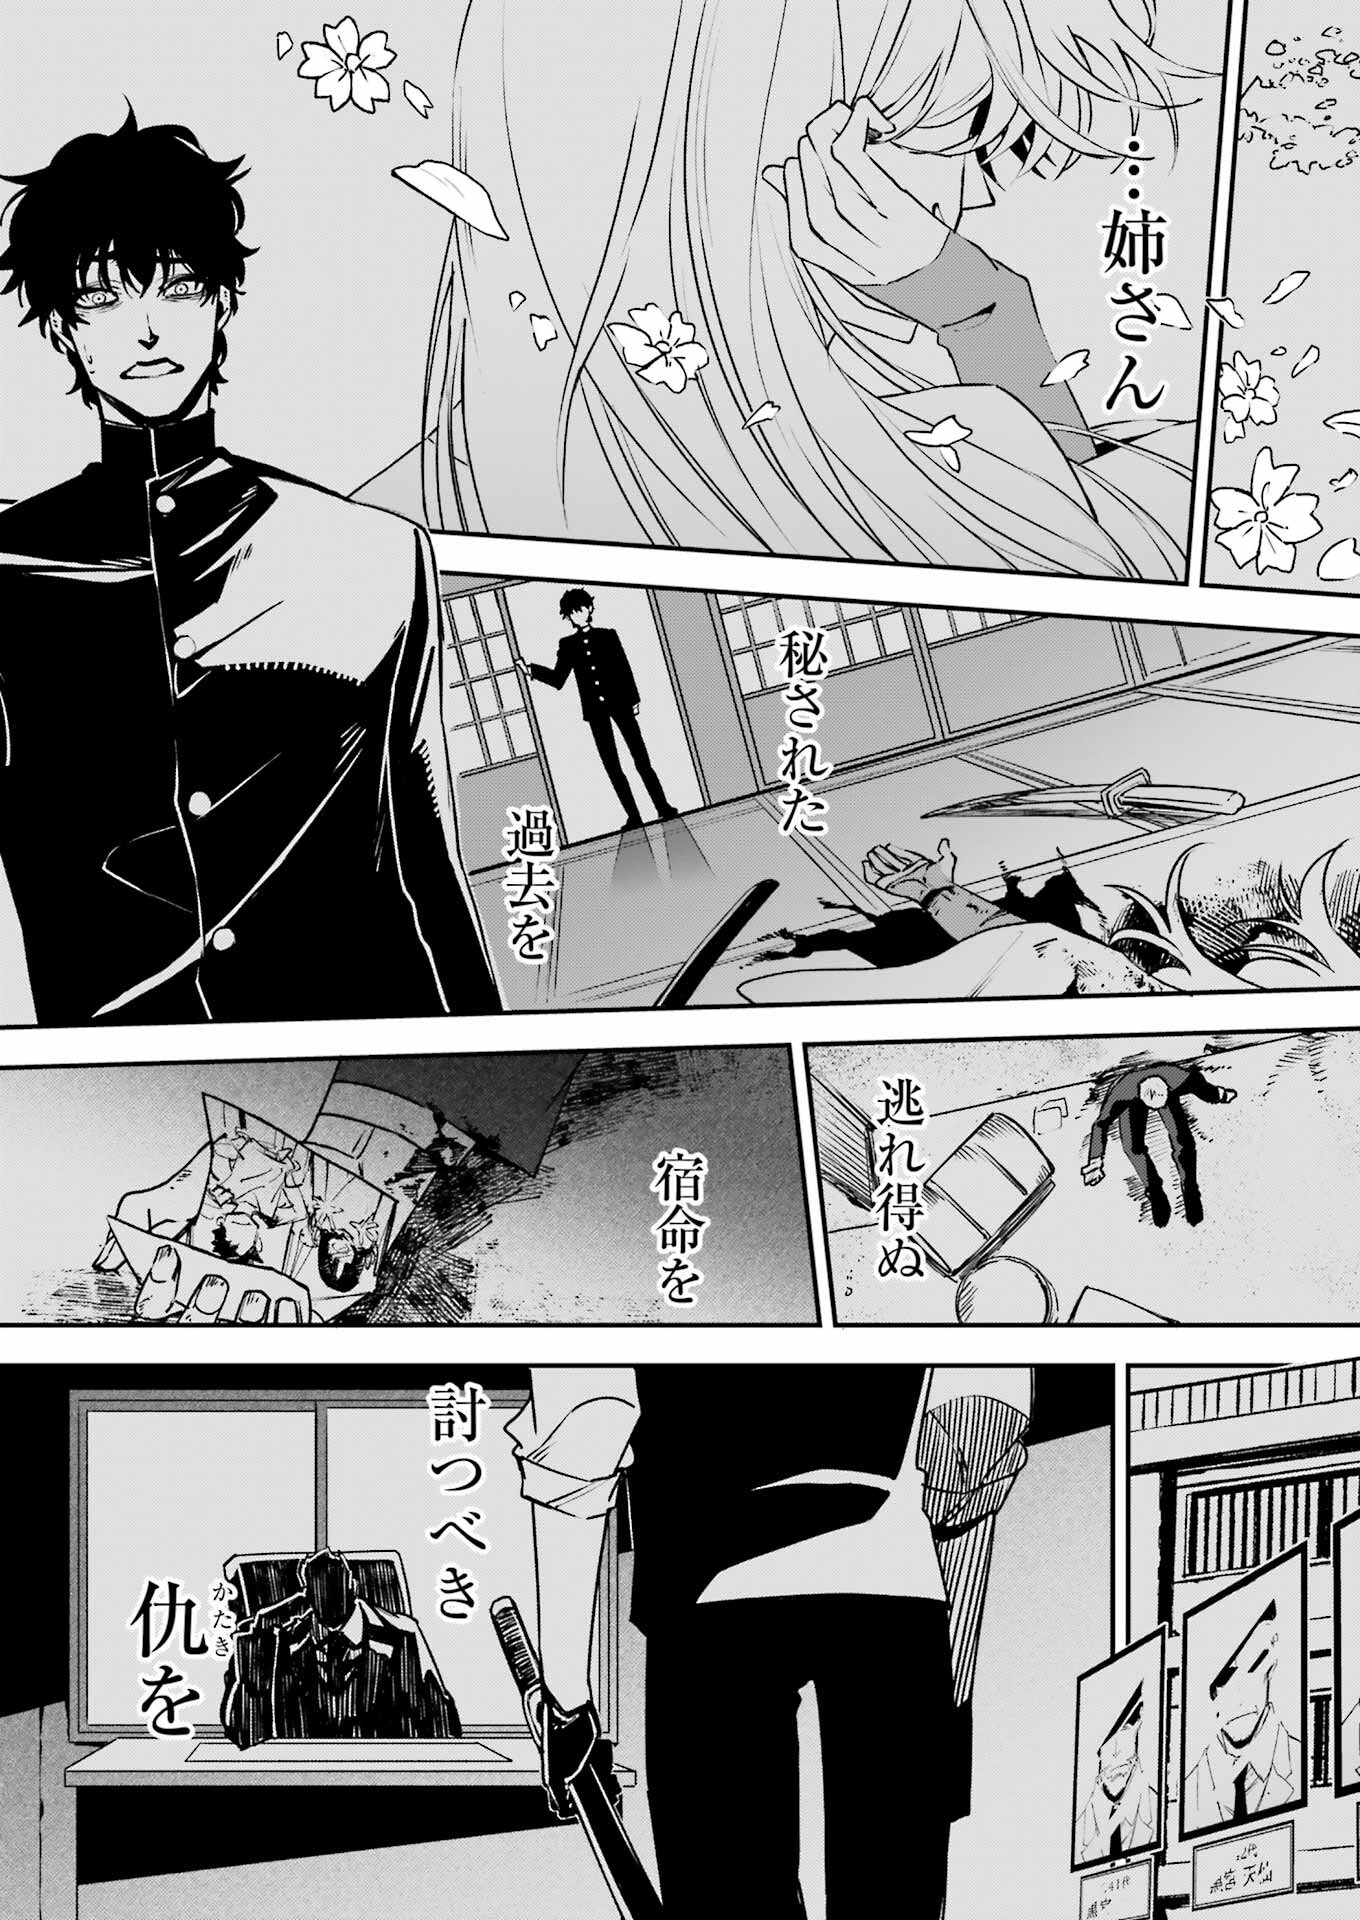 マーダーロック-殺人鬼の凶室-; Mādārokku – satsujinki no kyō-shitsu -; Murder Rock-The Murderer’s Chamber- 第35話 - Page 21